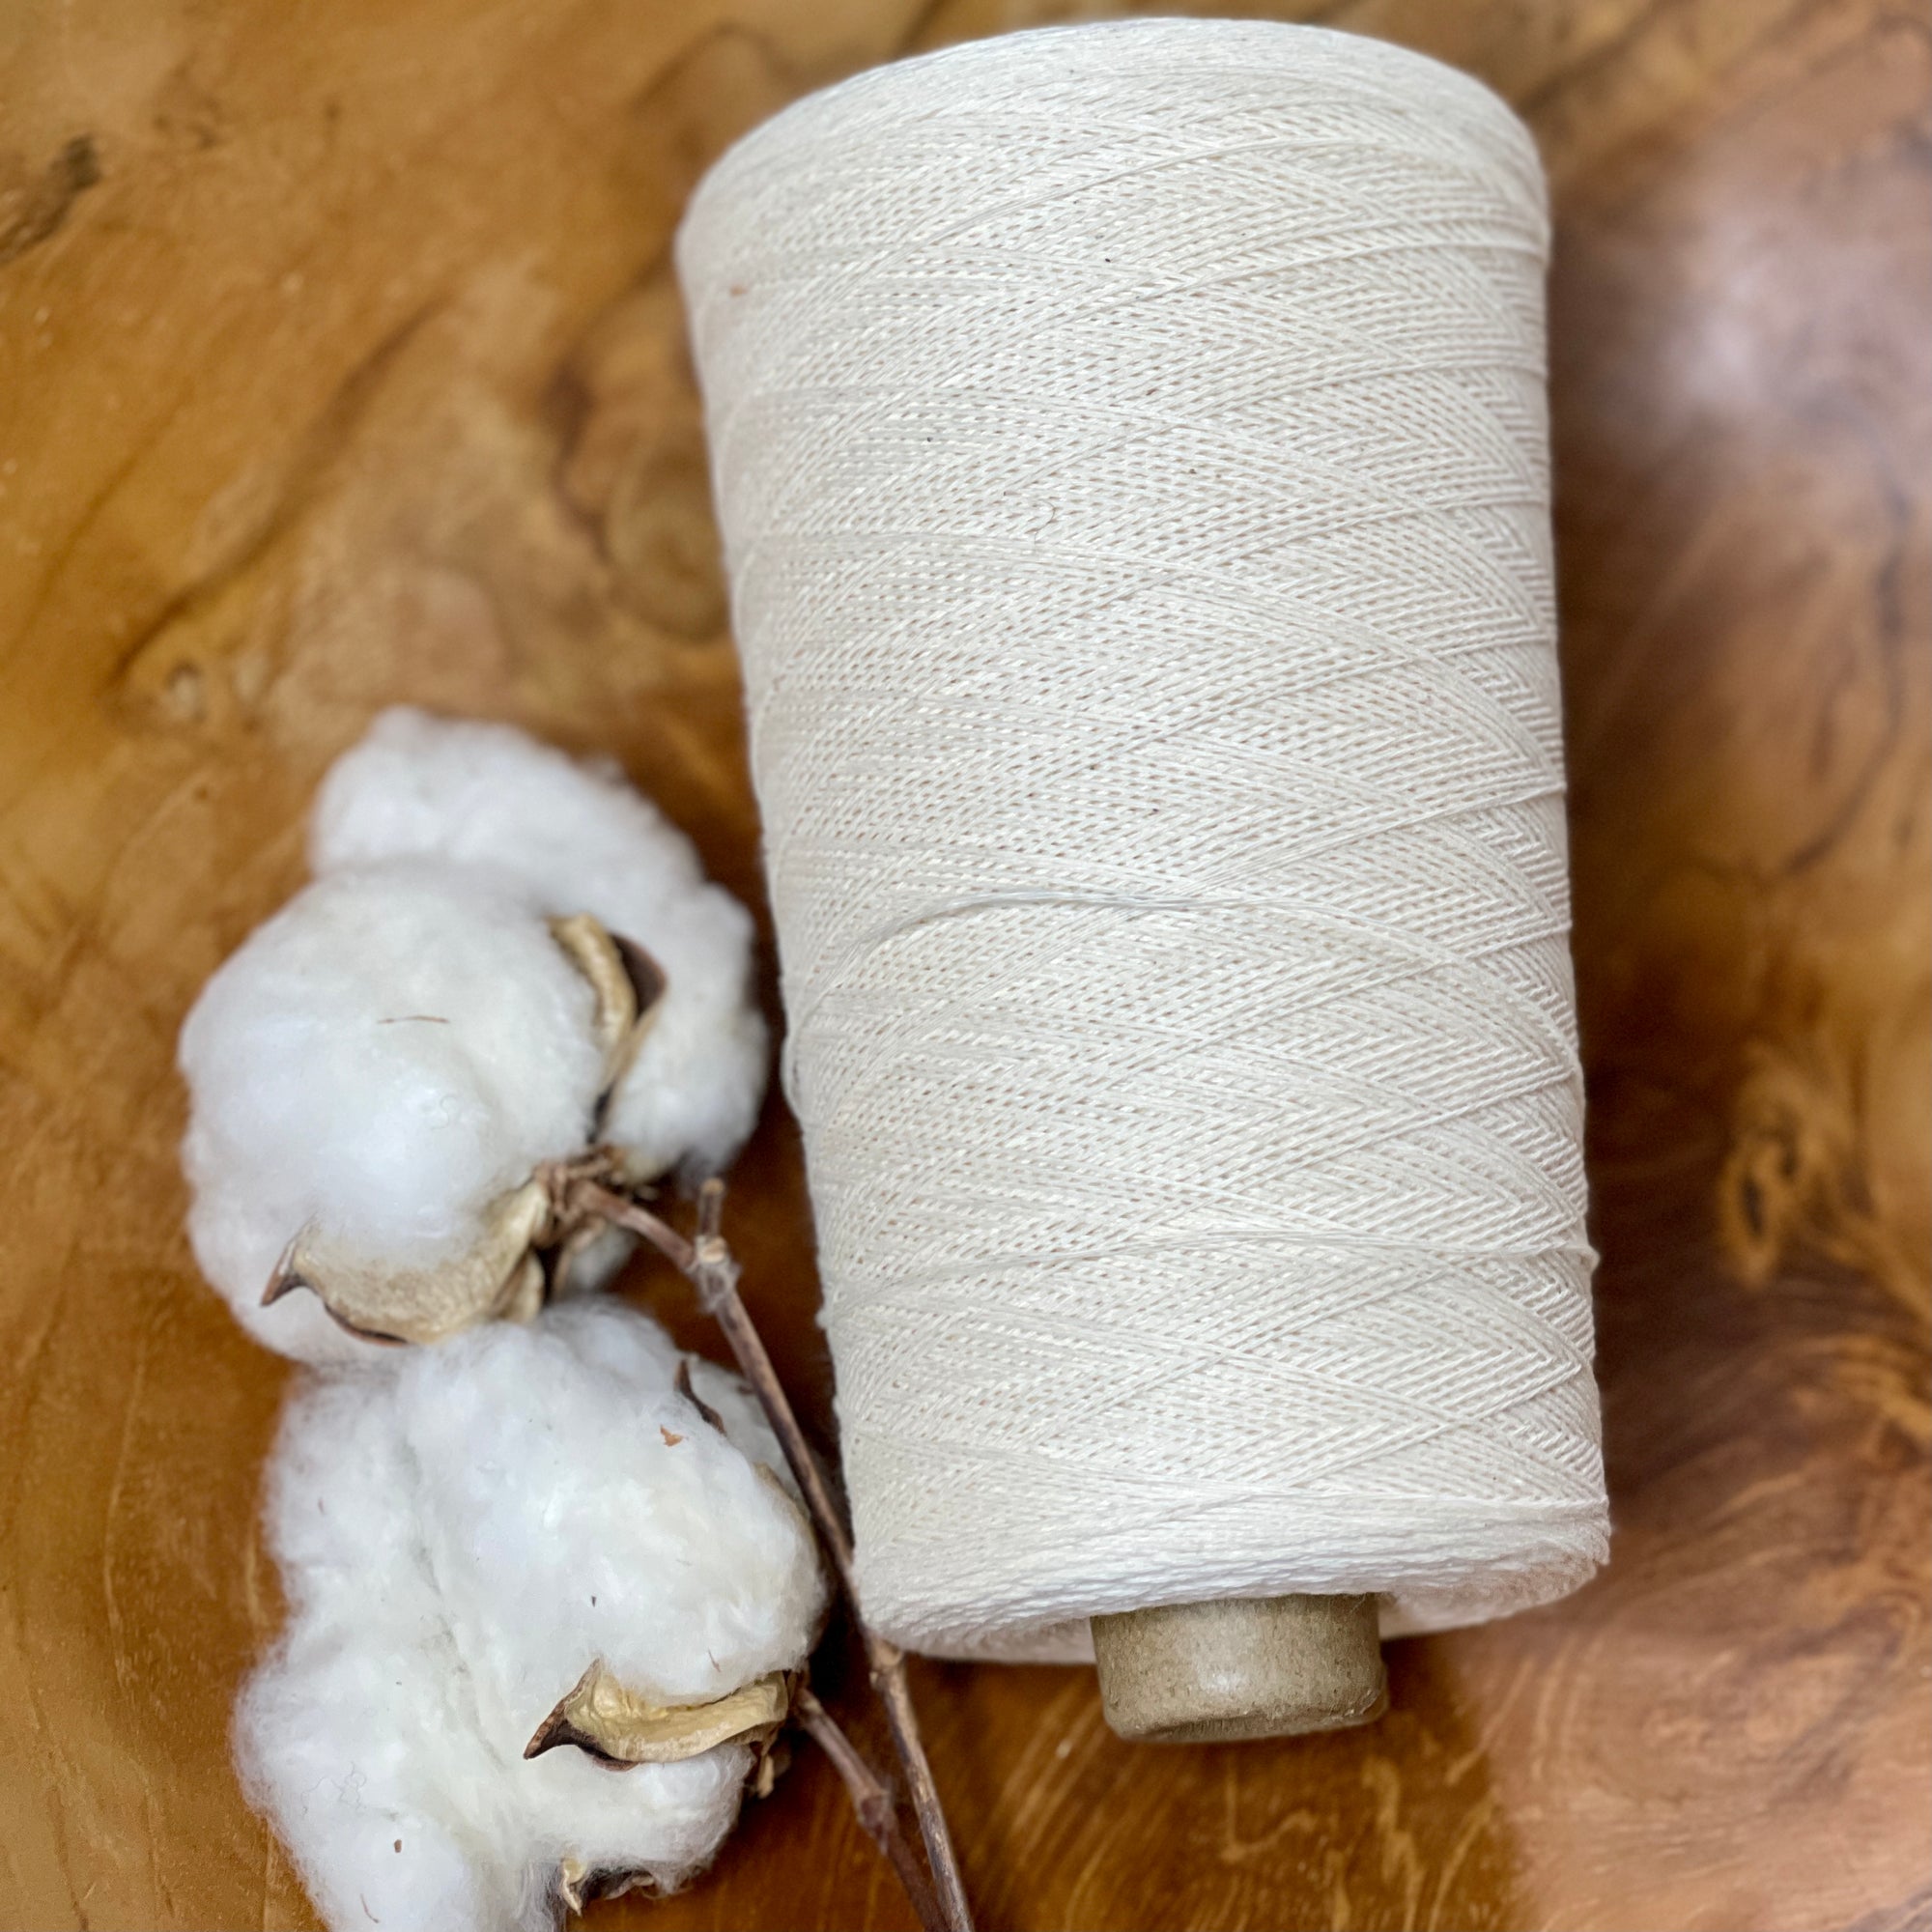 Australian cotton lace weight yarn